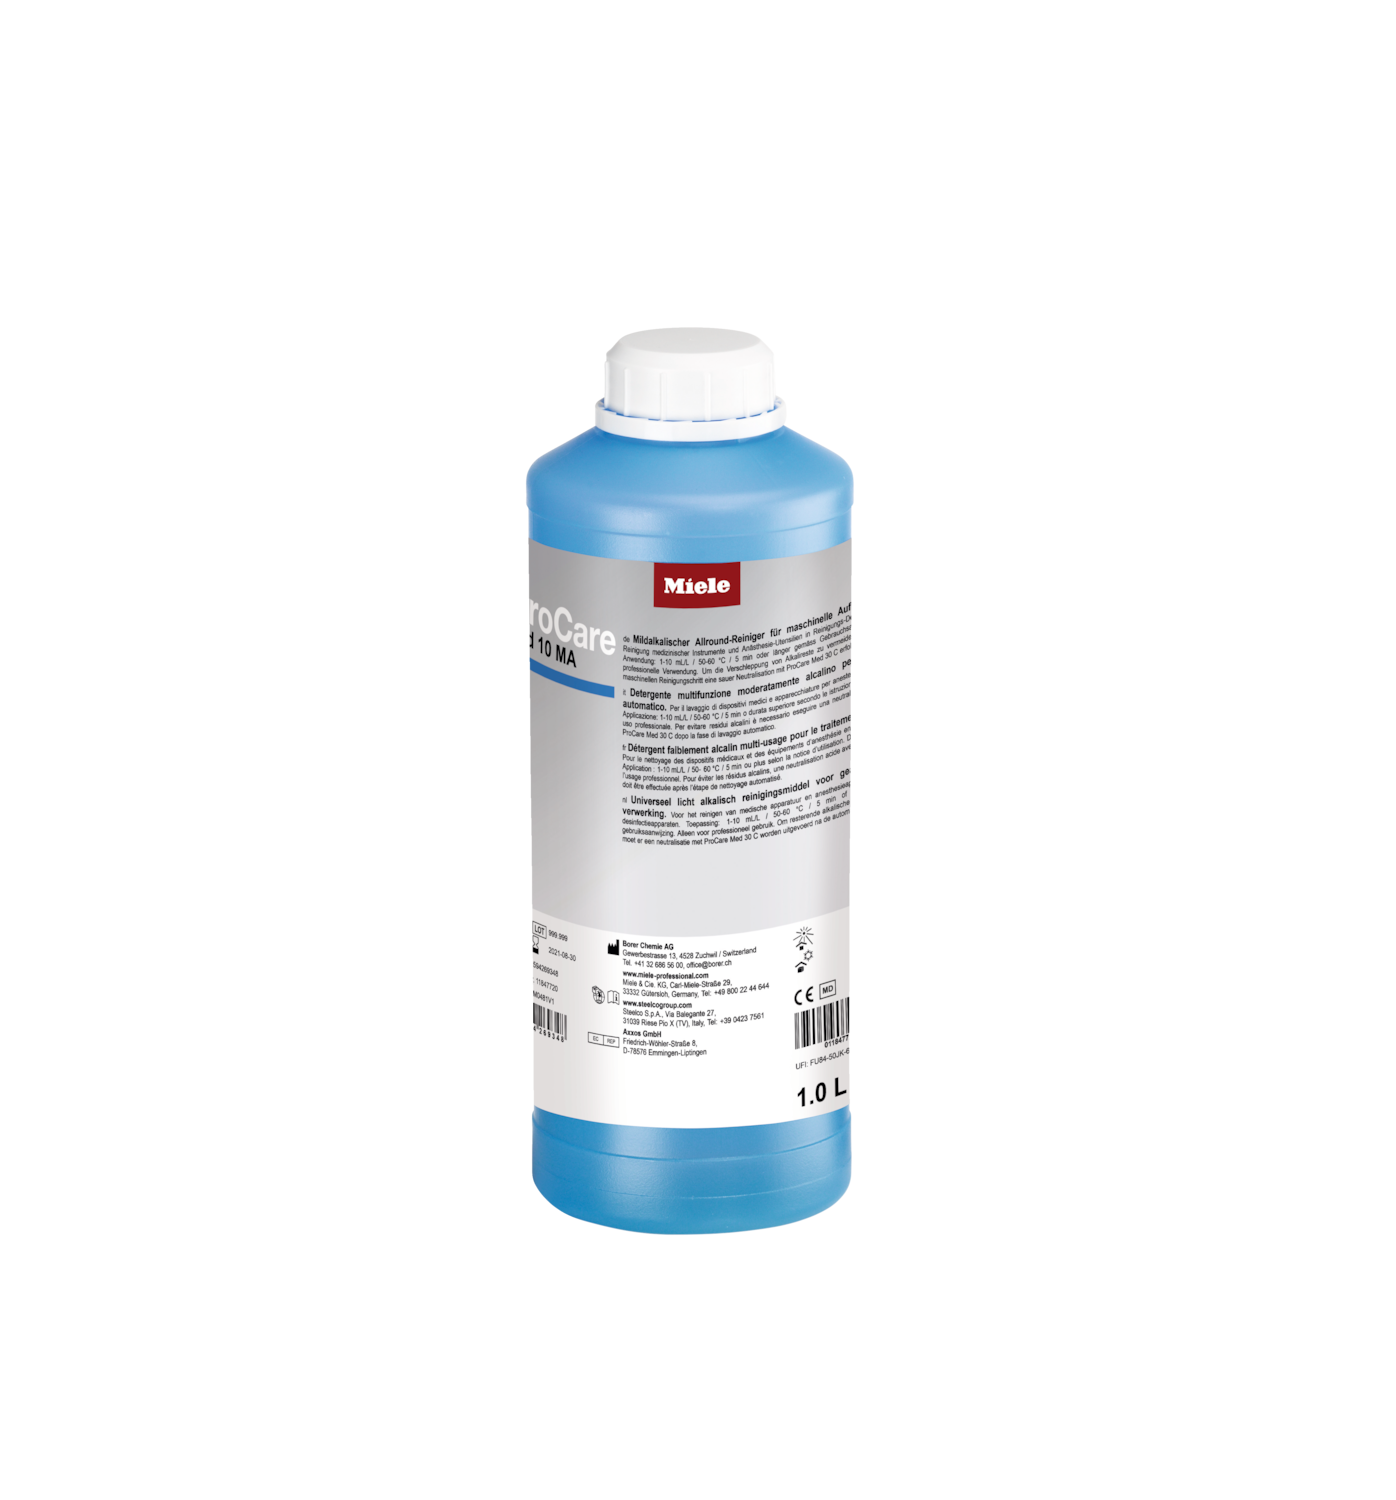 ProCare Med 10 MA - 1l [Typ 2] Allround reinigingsmiddel, mild alkalisch, 1 l Foto van het product Front View ZOOM